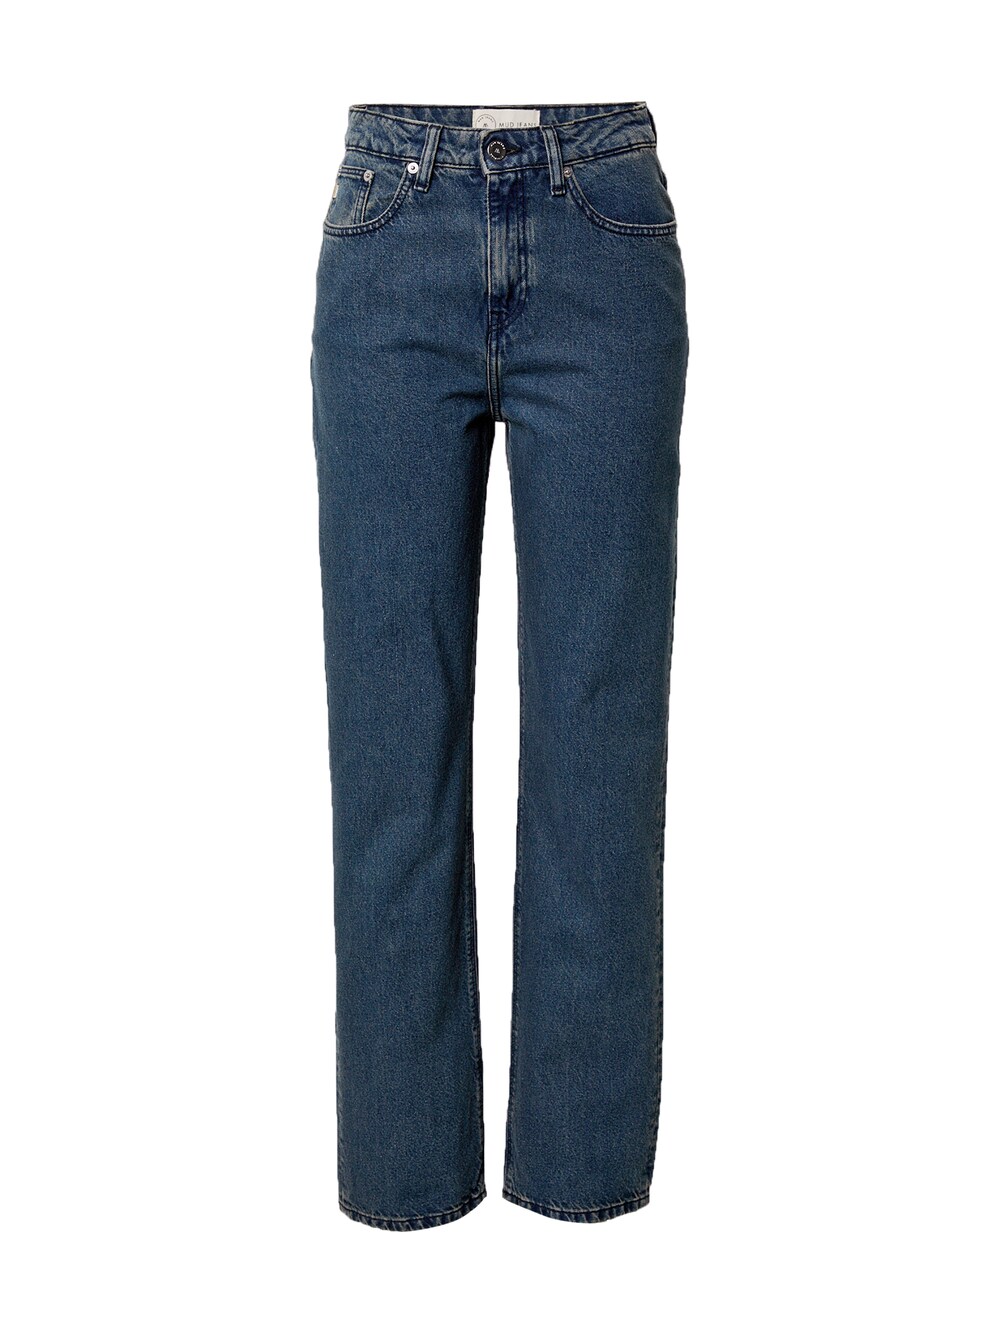 Широкие джинсы Mud Jeans Rose, синий широкие джинсы mud jeans sara синий